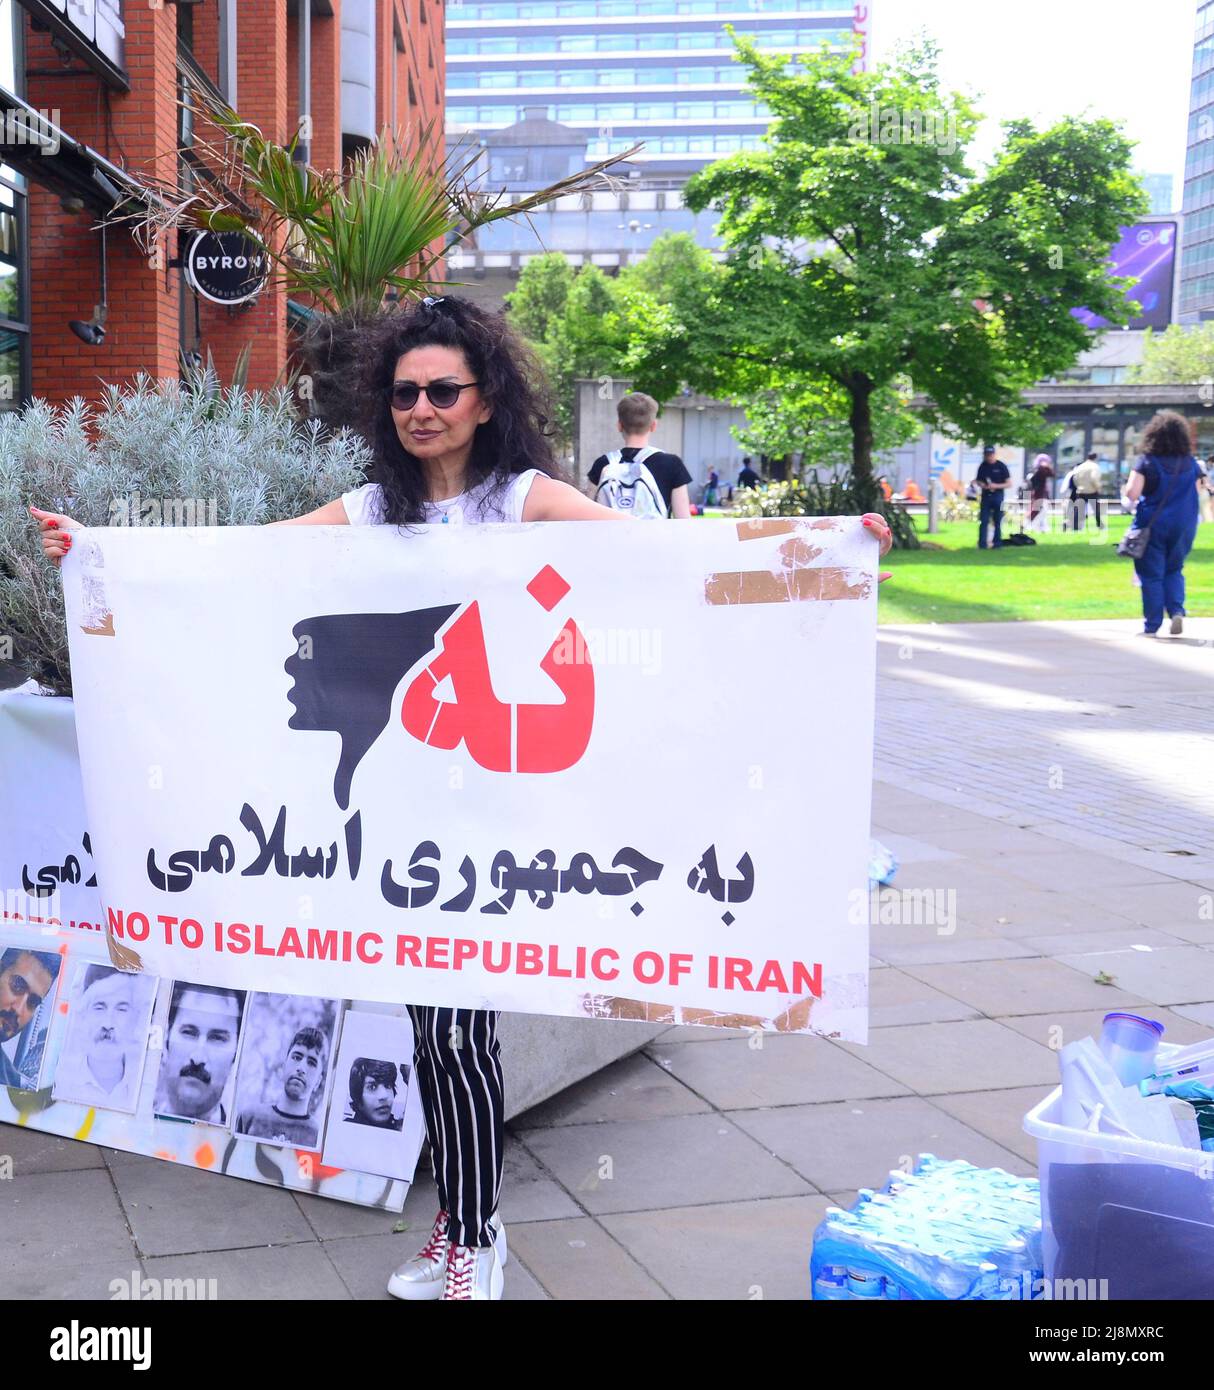 Manchester, Großbritannien, 17.. Mai 2022. In Piccadilly Gardens, im Zentrum von Manchester, England, Großbritannien und den Britischen Inseln fand ein kleiner Protest gegen die Unterdrückung durch die Regierung im Iran statt, einschließlich der Schließung des Internets in Teilen des Iran, da dort weiterhin Lebensmittelproteste stattfinden. Die Demonstranten behaupten, dass das iranische Regime im Jahr 2019 viele Hunderte von Iranern massakriert hat, die gegen den Anstieg des Benzinpreises protestierten. Berichte von Amnesty International und der BBC würden diese Behauptung unterstützen. Quelle: Terry Waller/Alamy Live News Stockfoto